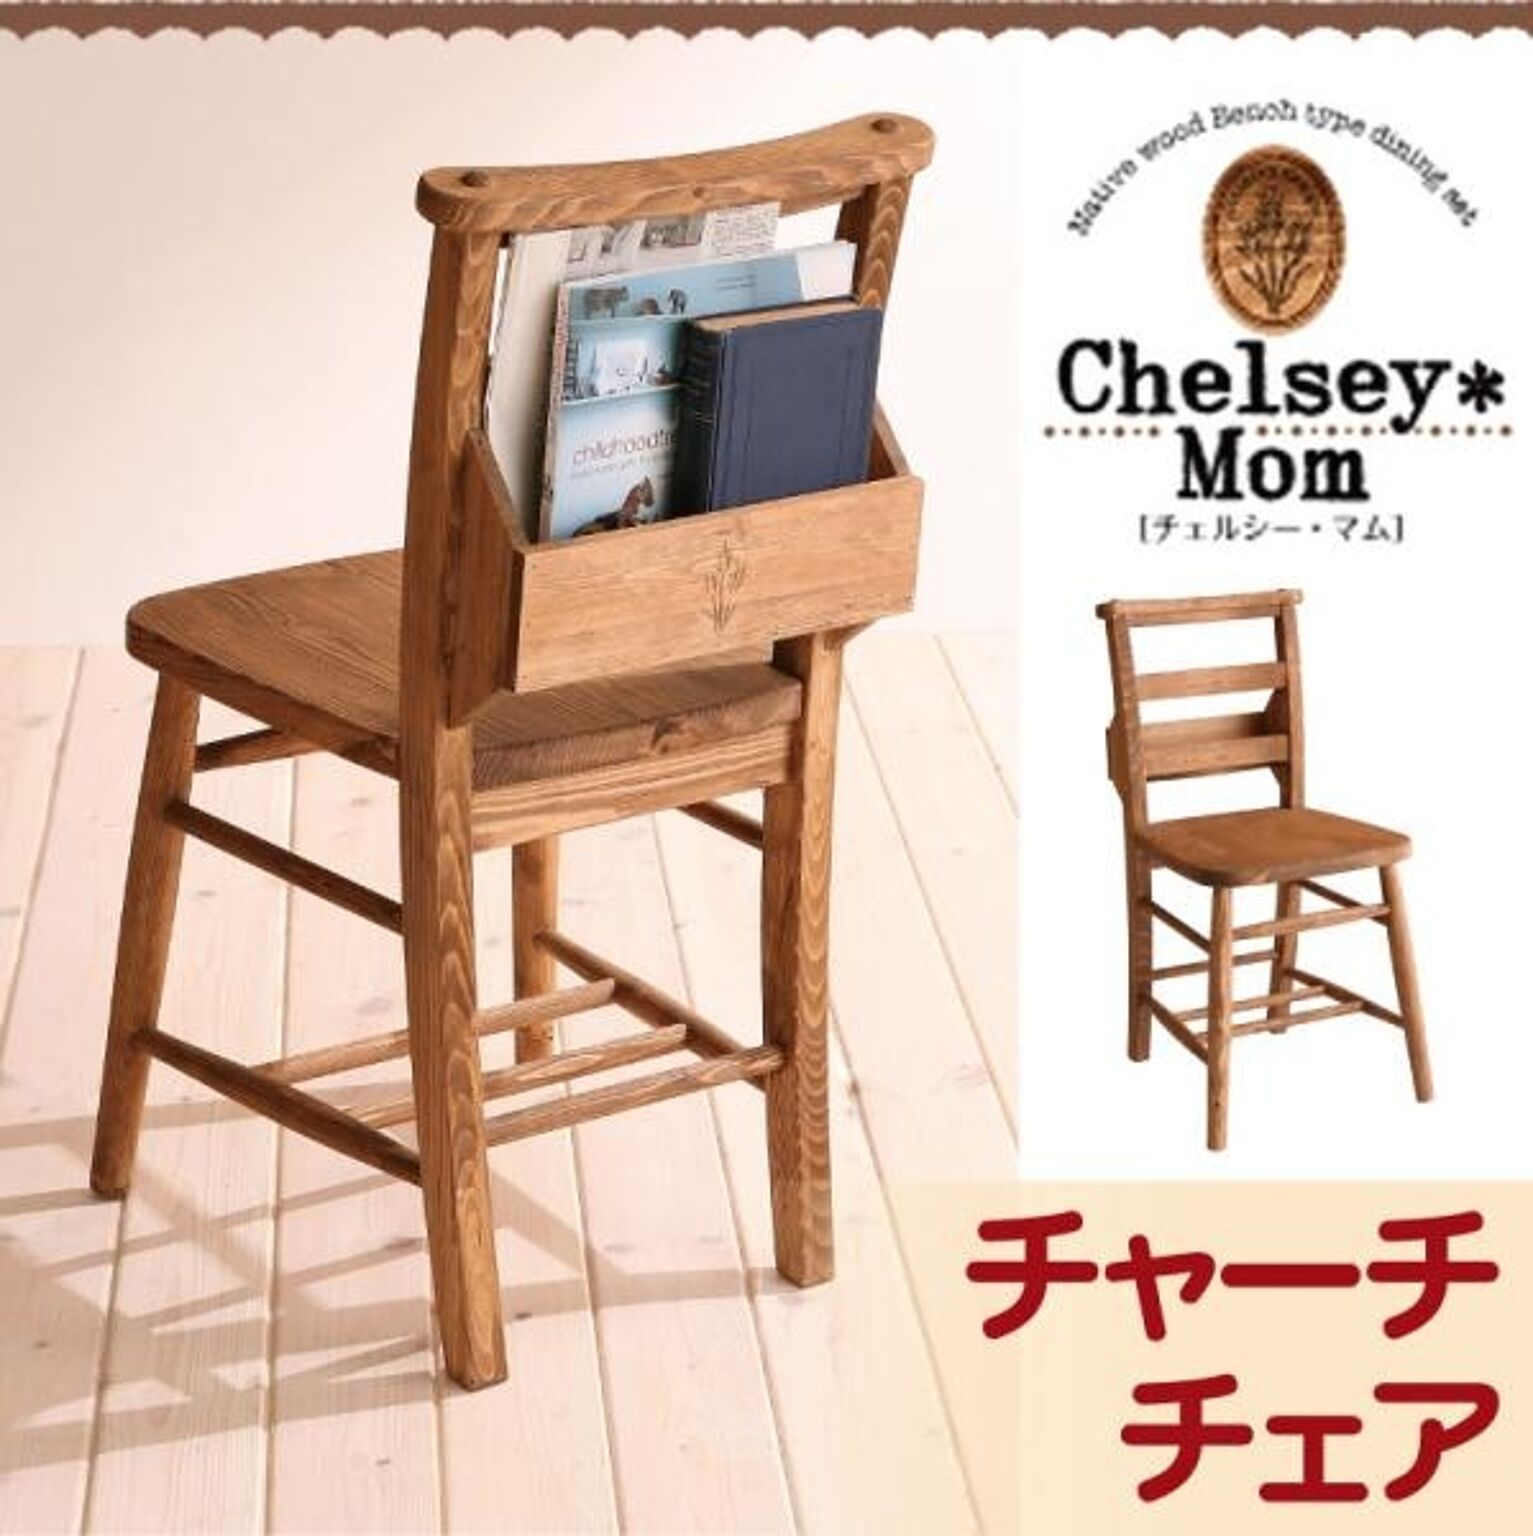 天然木カントリーデザイン家具シリーズ【Chelsey*Mom】チェルシー・マム★チャーチチェア